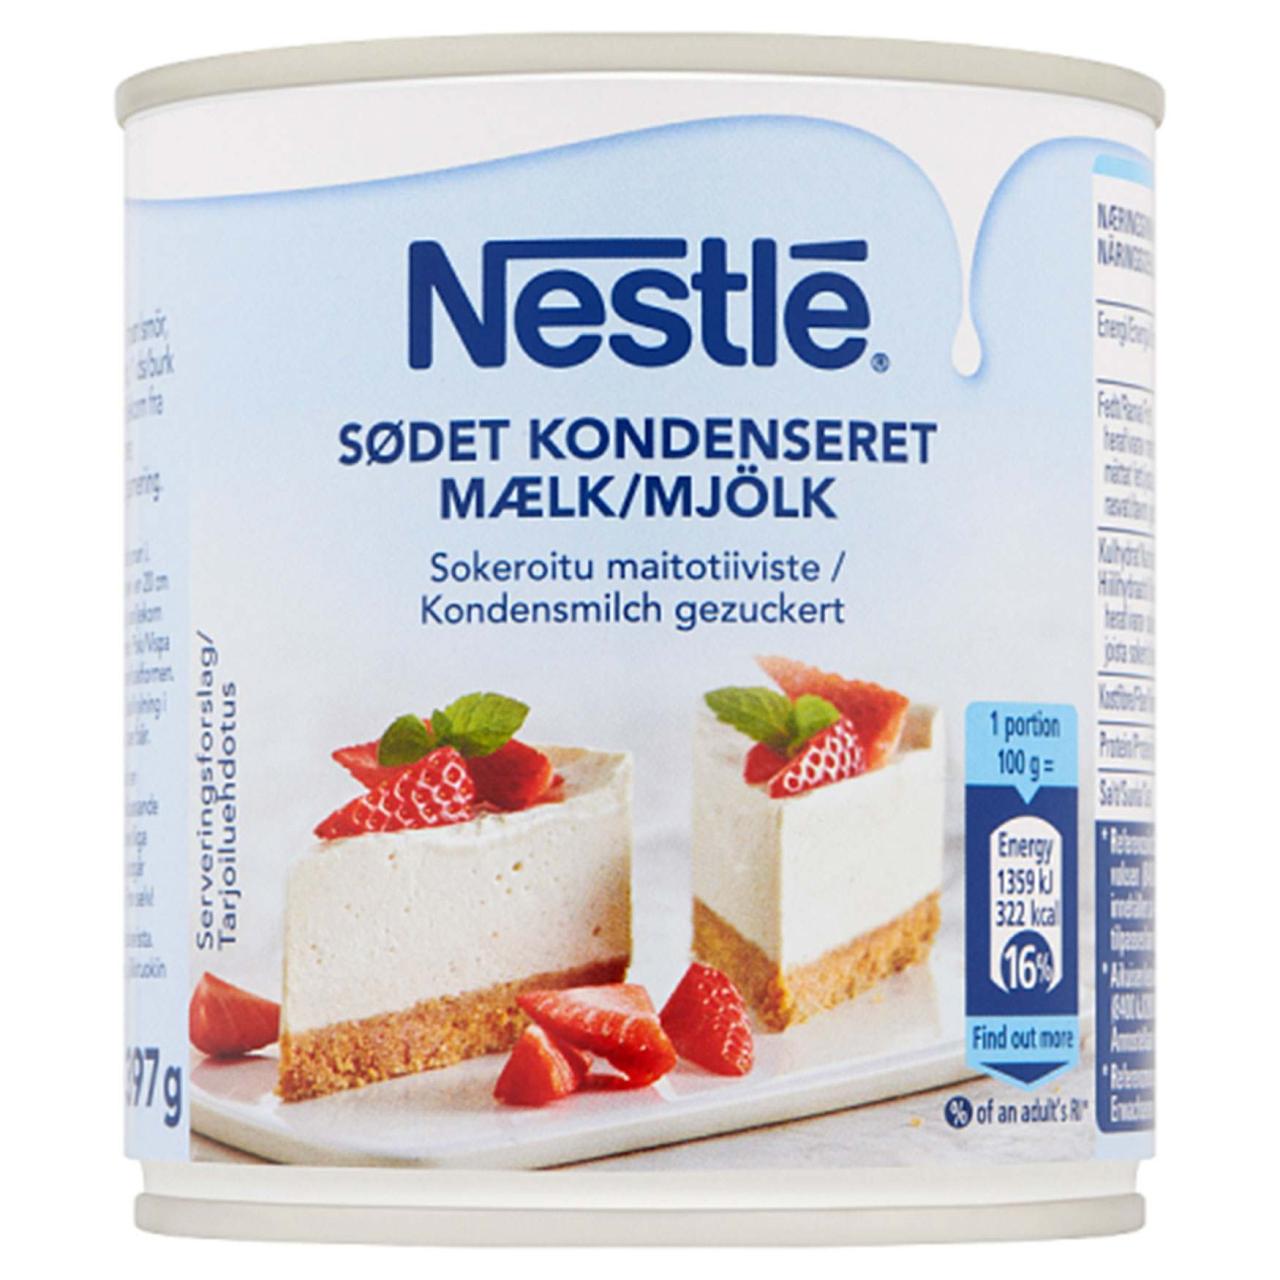 * Nestlé Kondensmilch gezuckert 397g